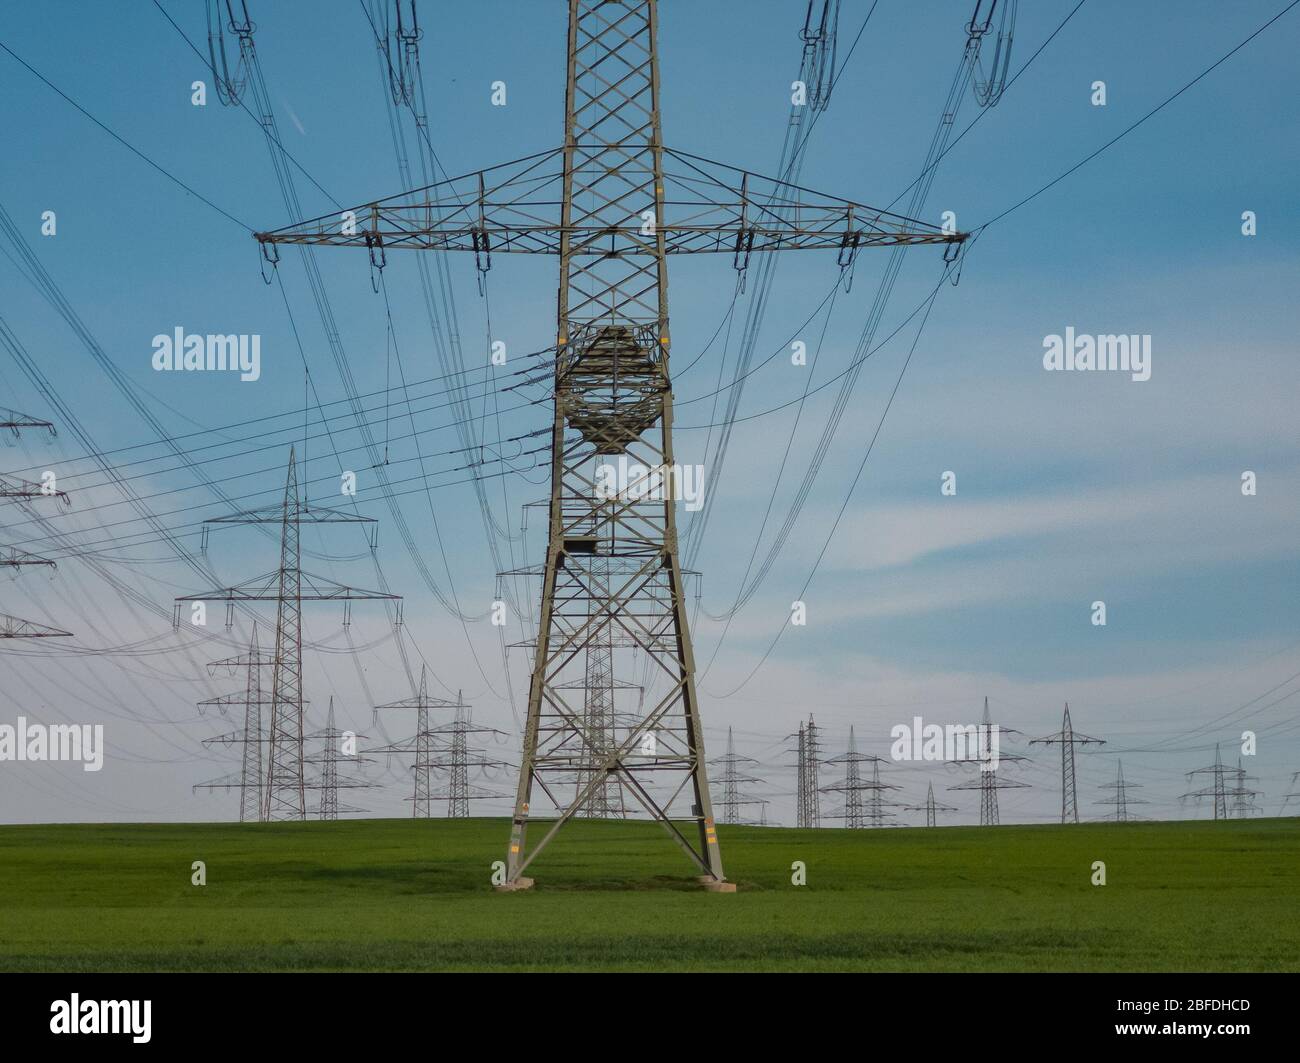 Pylone von Hochspannungsleitungen vor einem blauen Himmel mit Wolken auf einem grünen Feld, Elektroindustrie. Stockfoto